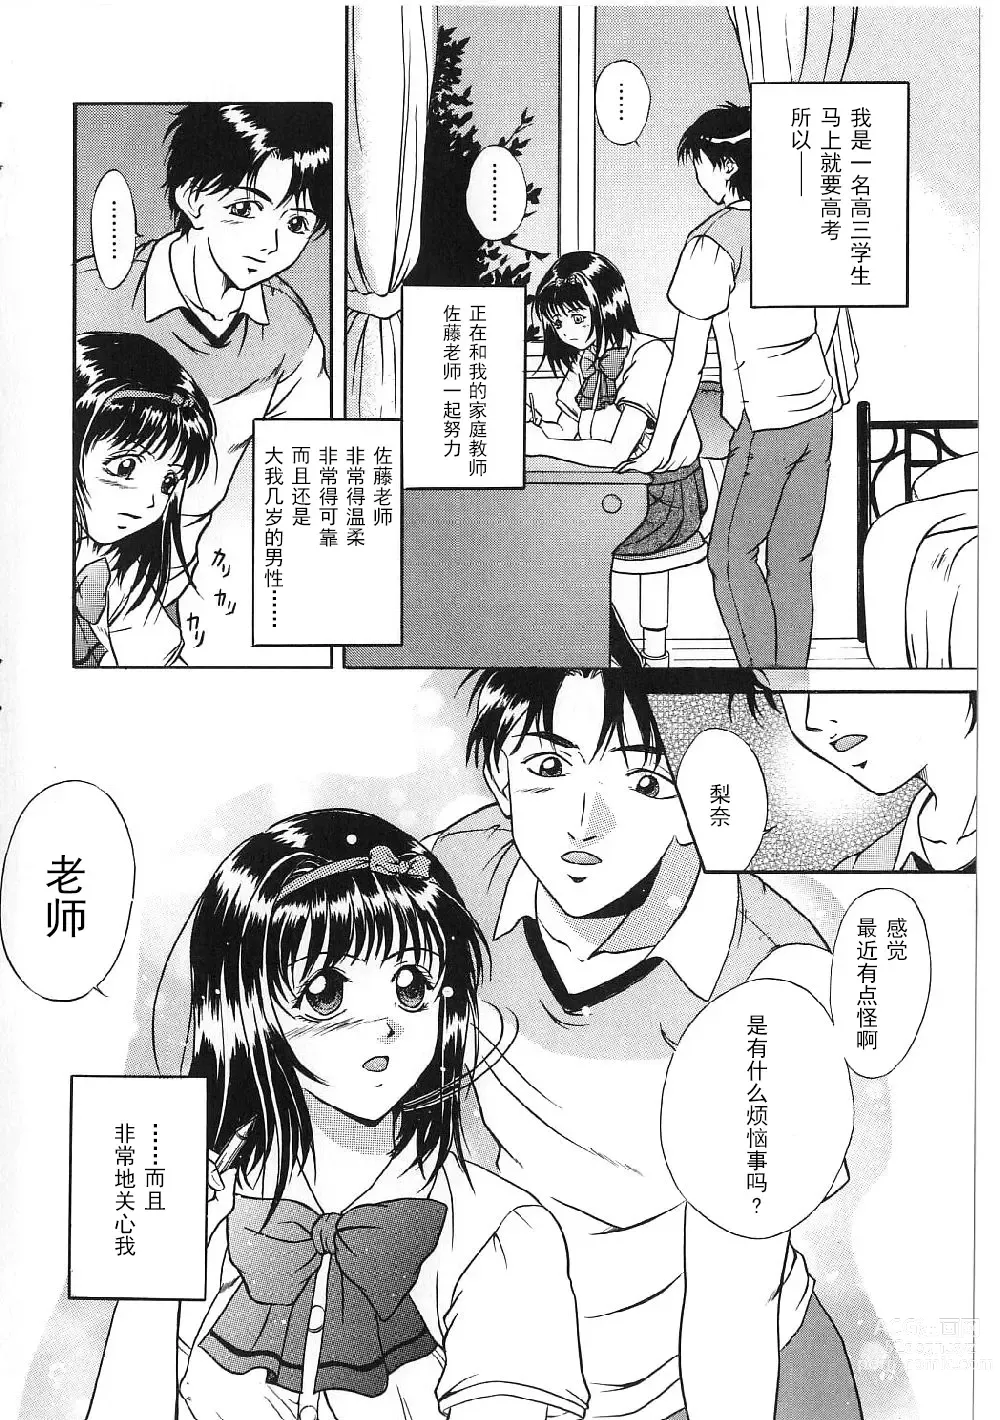 Page 6 of manga Kyonyuu Bondage